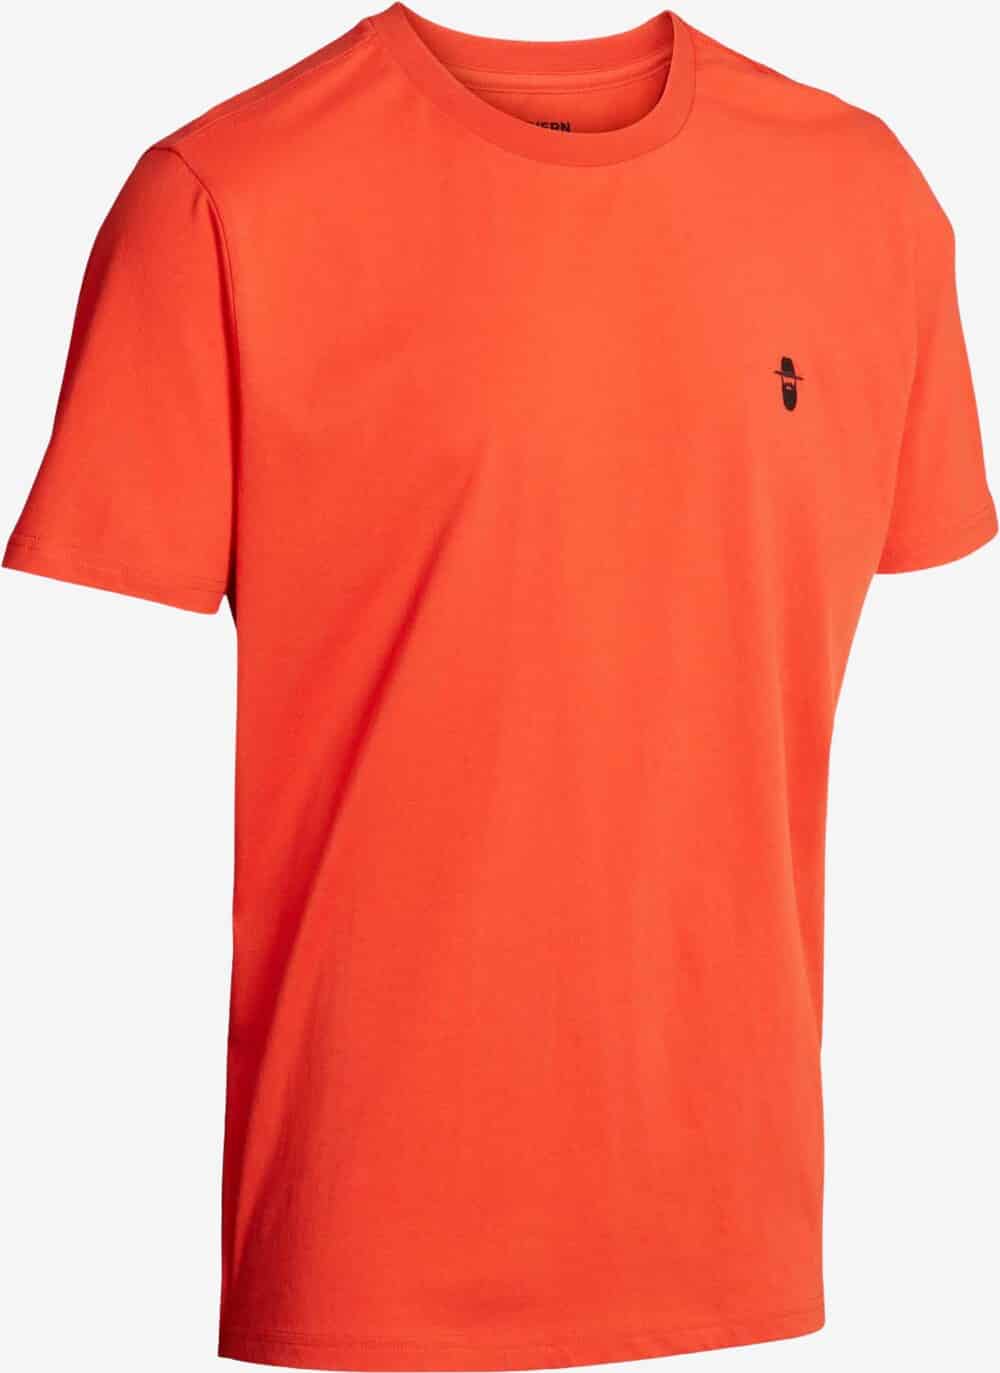 Se Northern Hunting - Karl T-shirt (Orange) - 2XL hos Friluft.dk